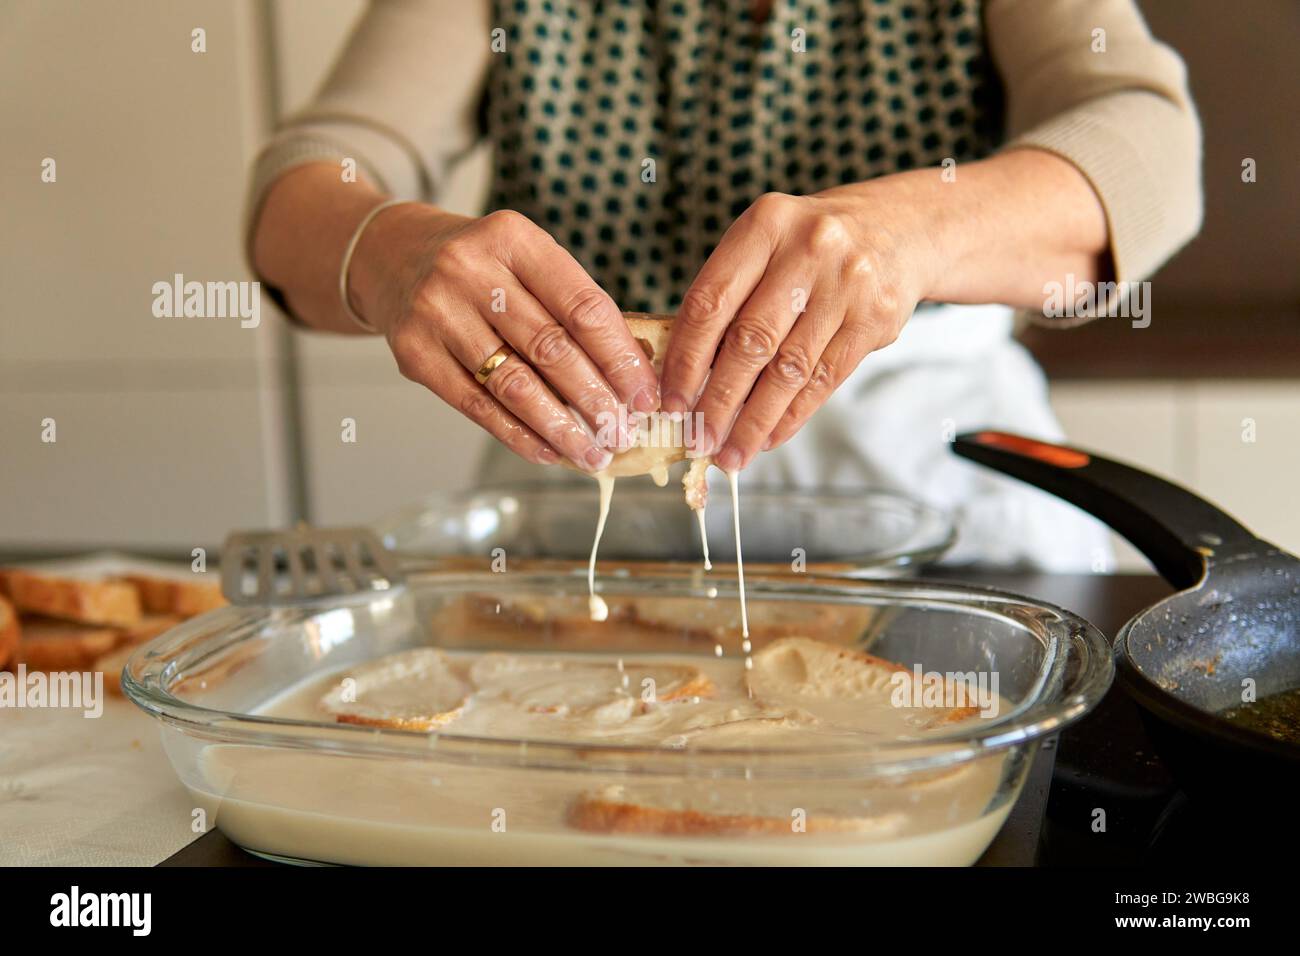 Gros plan sur les mains d'une femme âgée qui fait frire des toasts latino-français. Faire une recette traditionnelle sur une cuisinière électrique contemporaine Banque D'Images